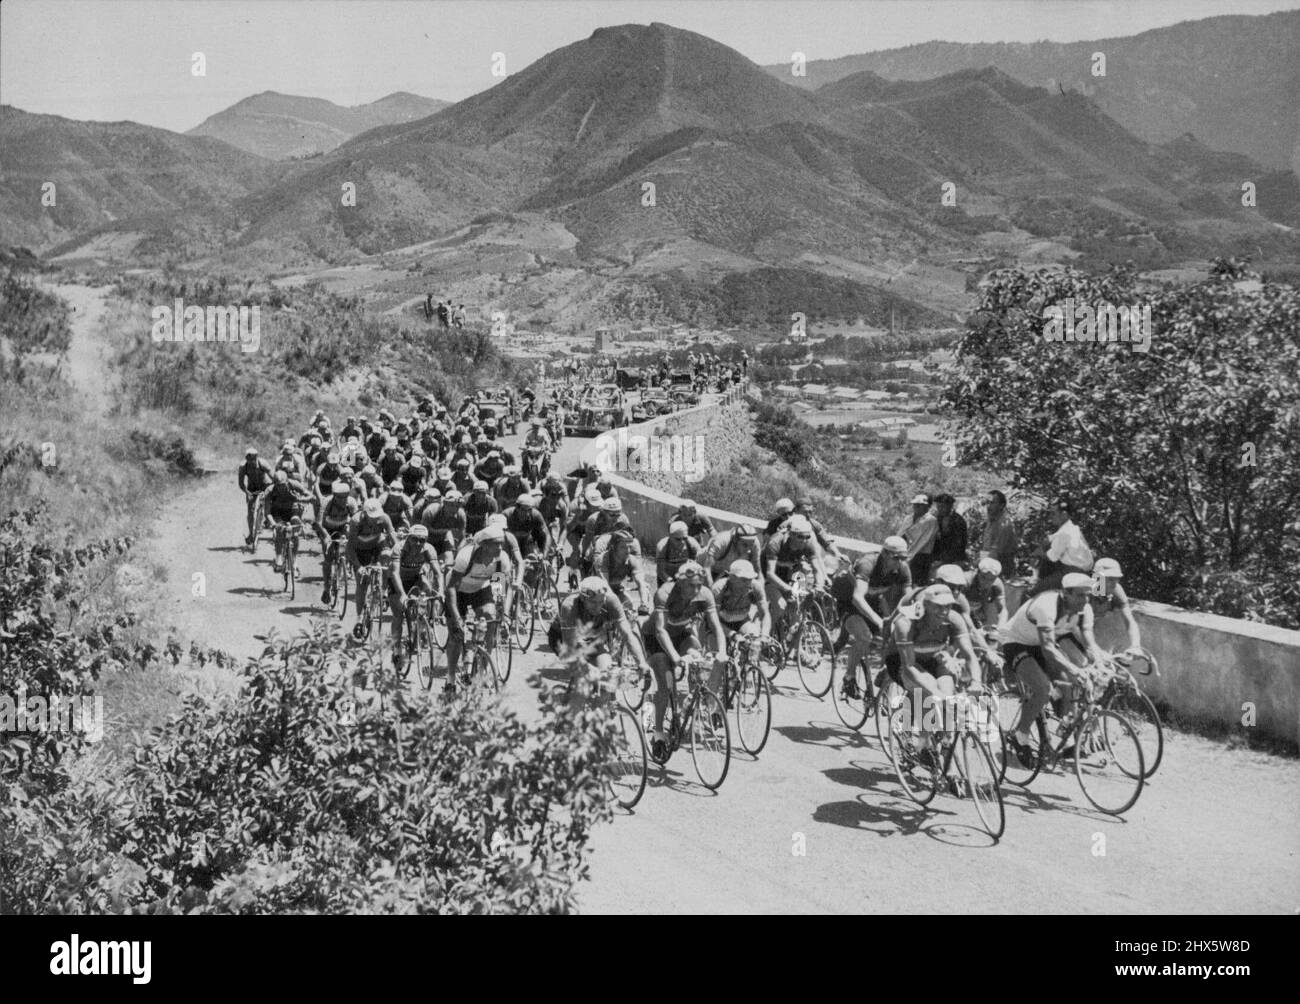 Una scena tipica del Tour de France in uno dei periodi più riposanti con il campo che fa la sua strada lentamente in un paese aspro. Il Tour De France Cycling - il pacchetto nelle prime piste dei Pirenei. 24 agosto 1953. Sport, sport, atleta, atletica, Foto Stock